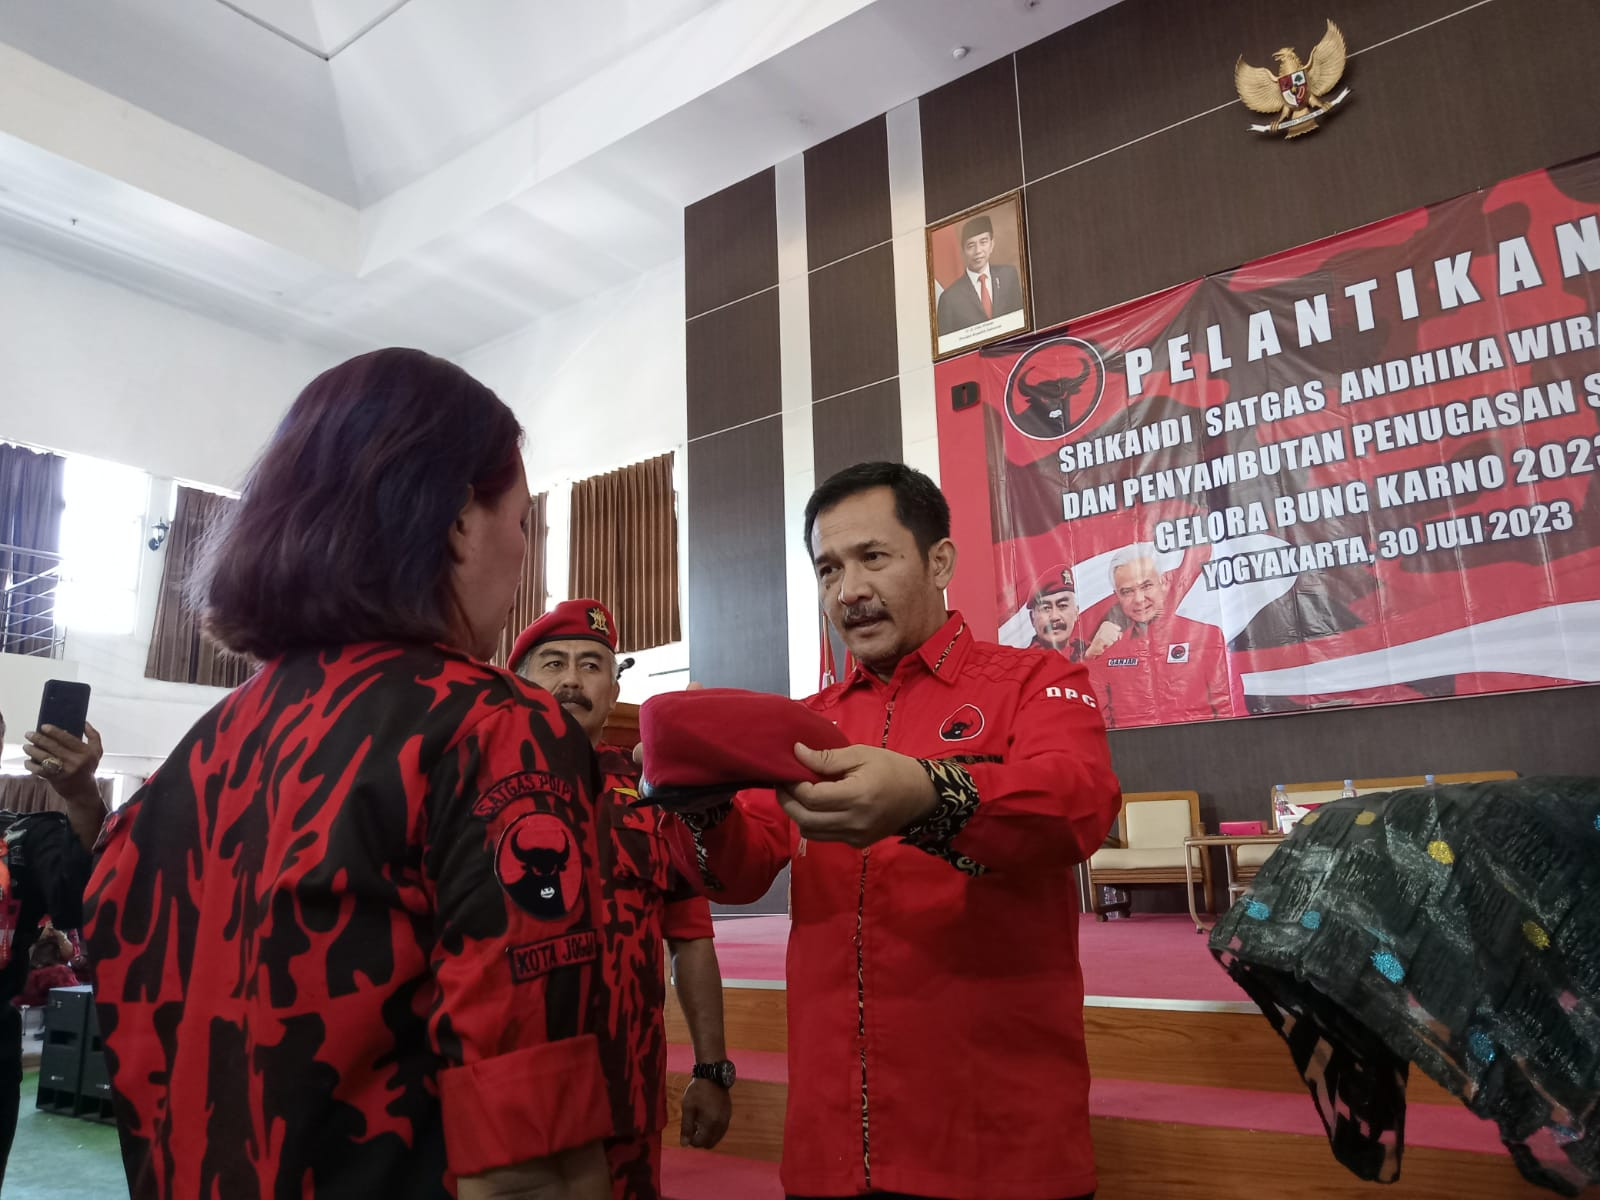 Ketua DPC PDIP Yogyakarta Eko Suwanto Lantik Srikandi Satgas PDI Perjuangan, Siap Menangkan Ganjar Pranowo dalam Pilpres 2024